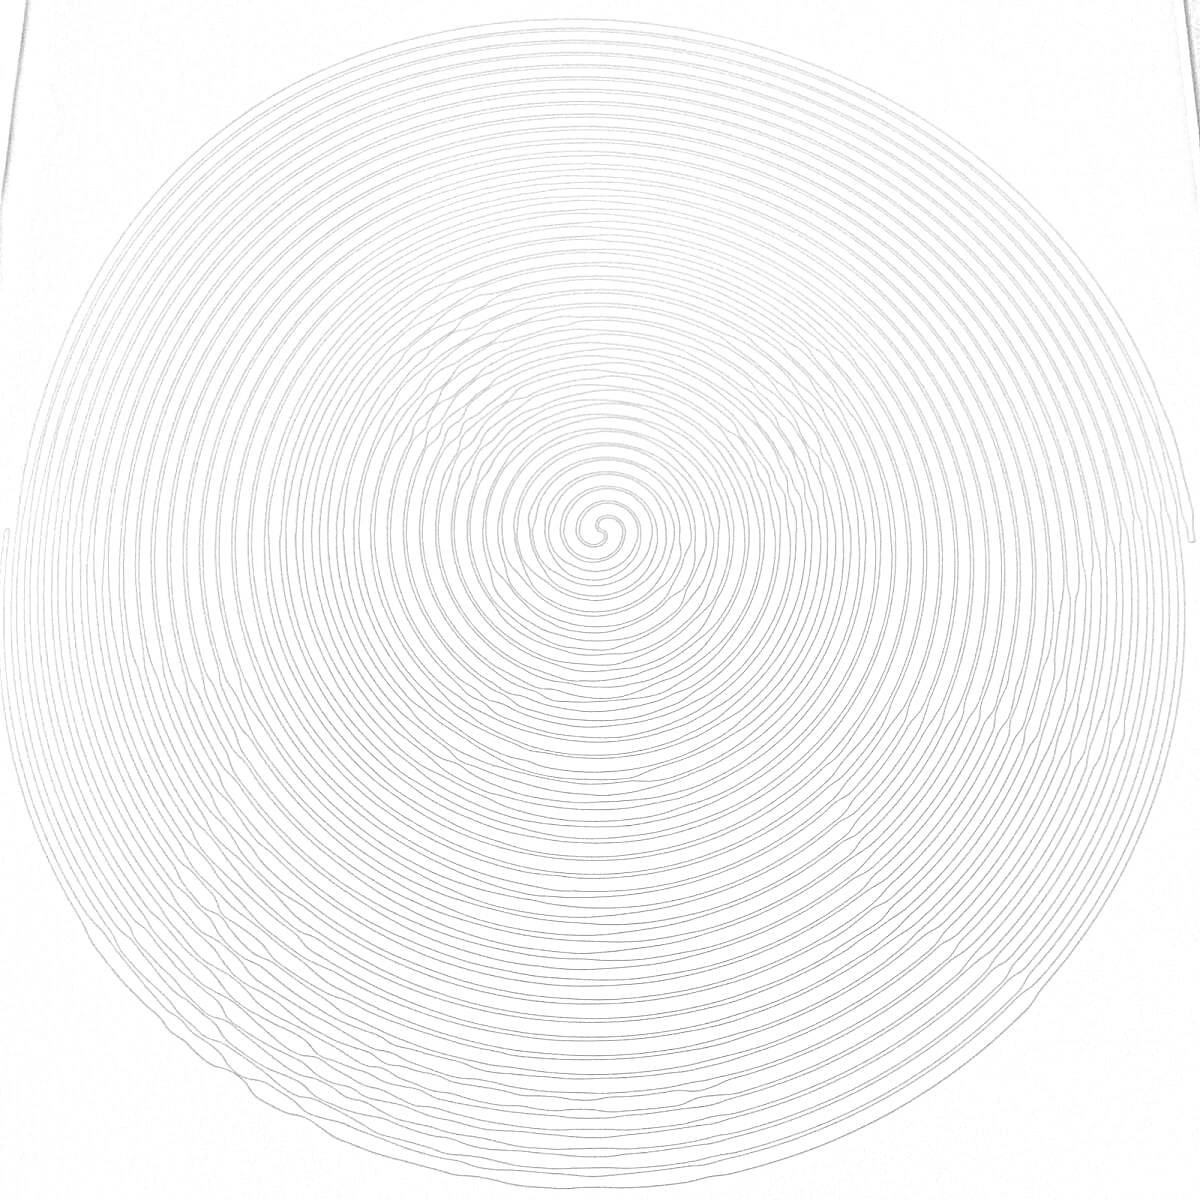 Раскраска Спиральная раскраска на белом фоне без явных изображений